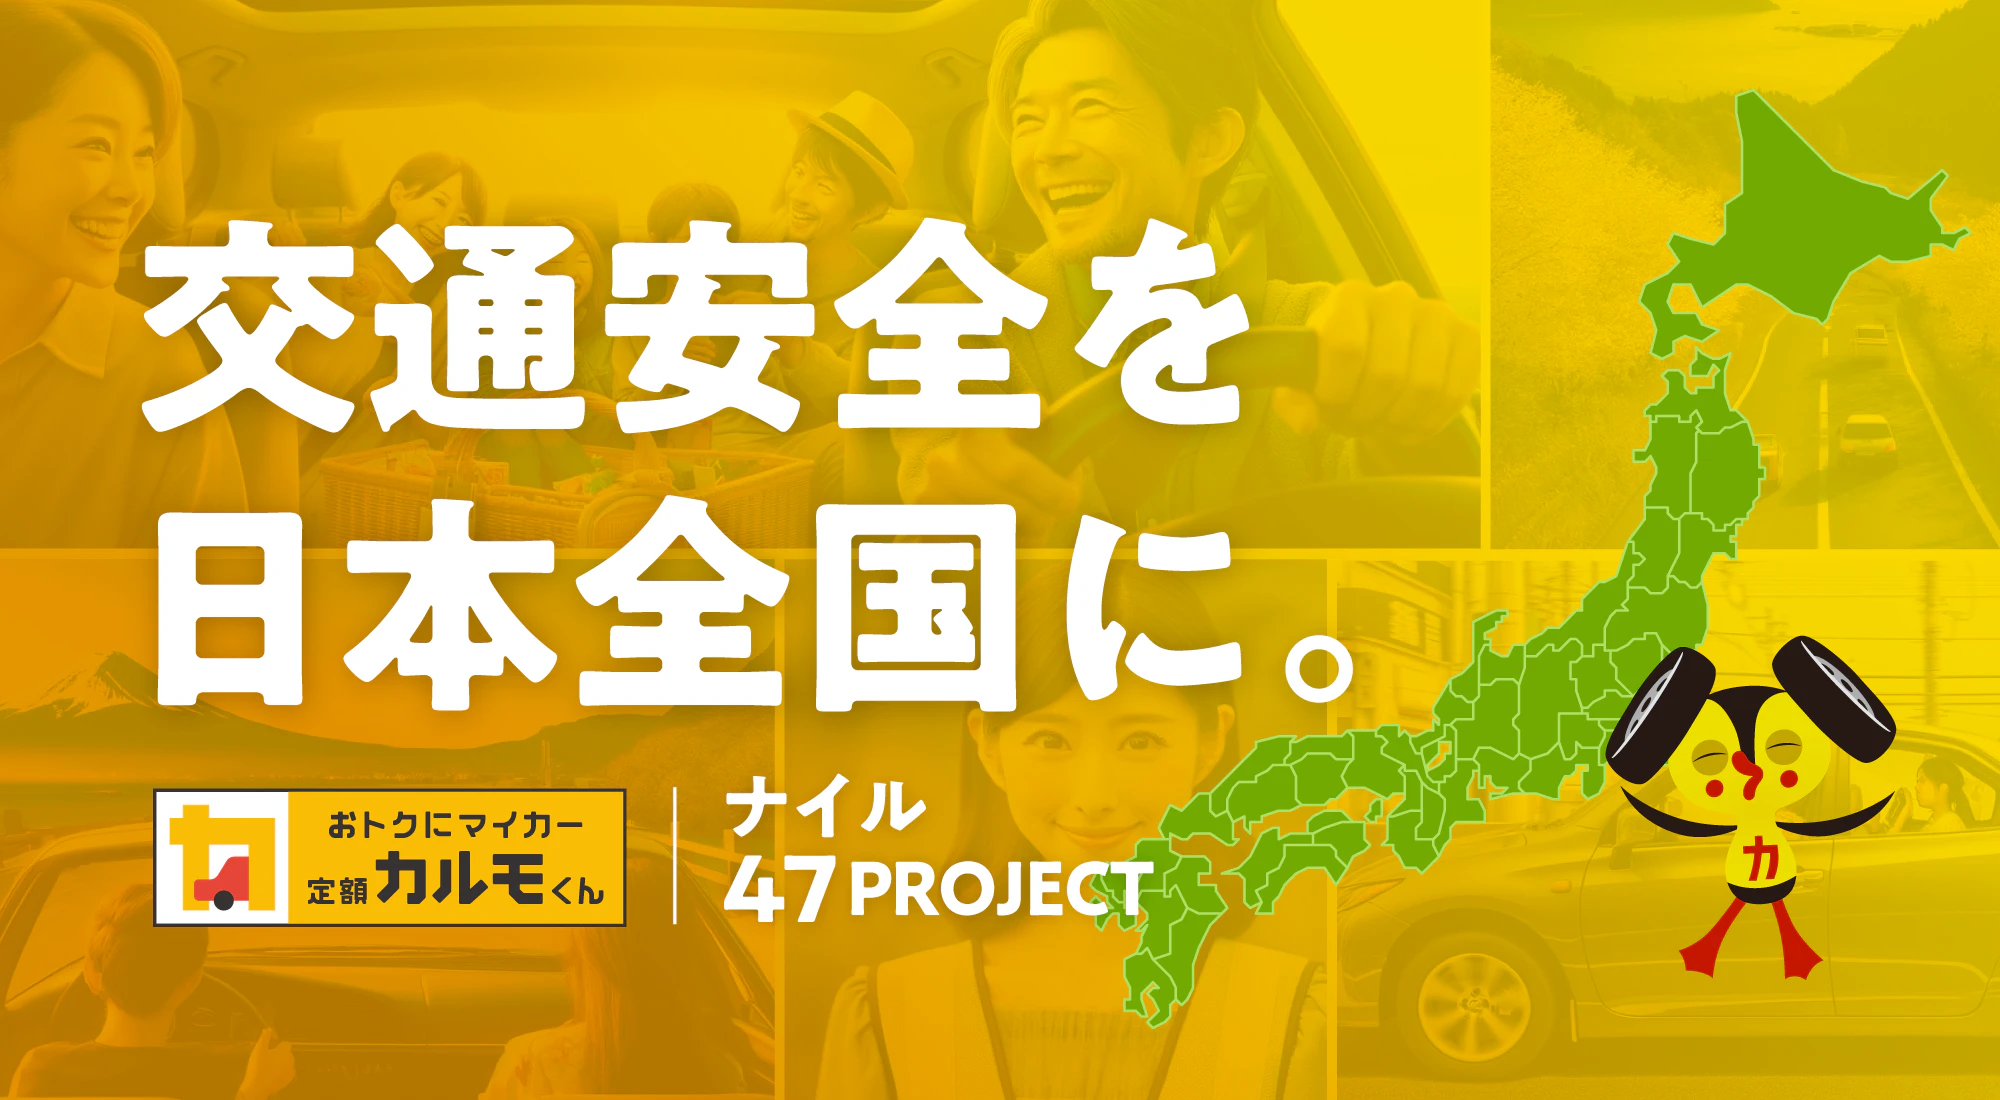 ナイルが岩手県の「交通安全指導事業」と 新潟県の「交通安全対策関連事業」に寄付